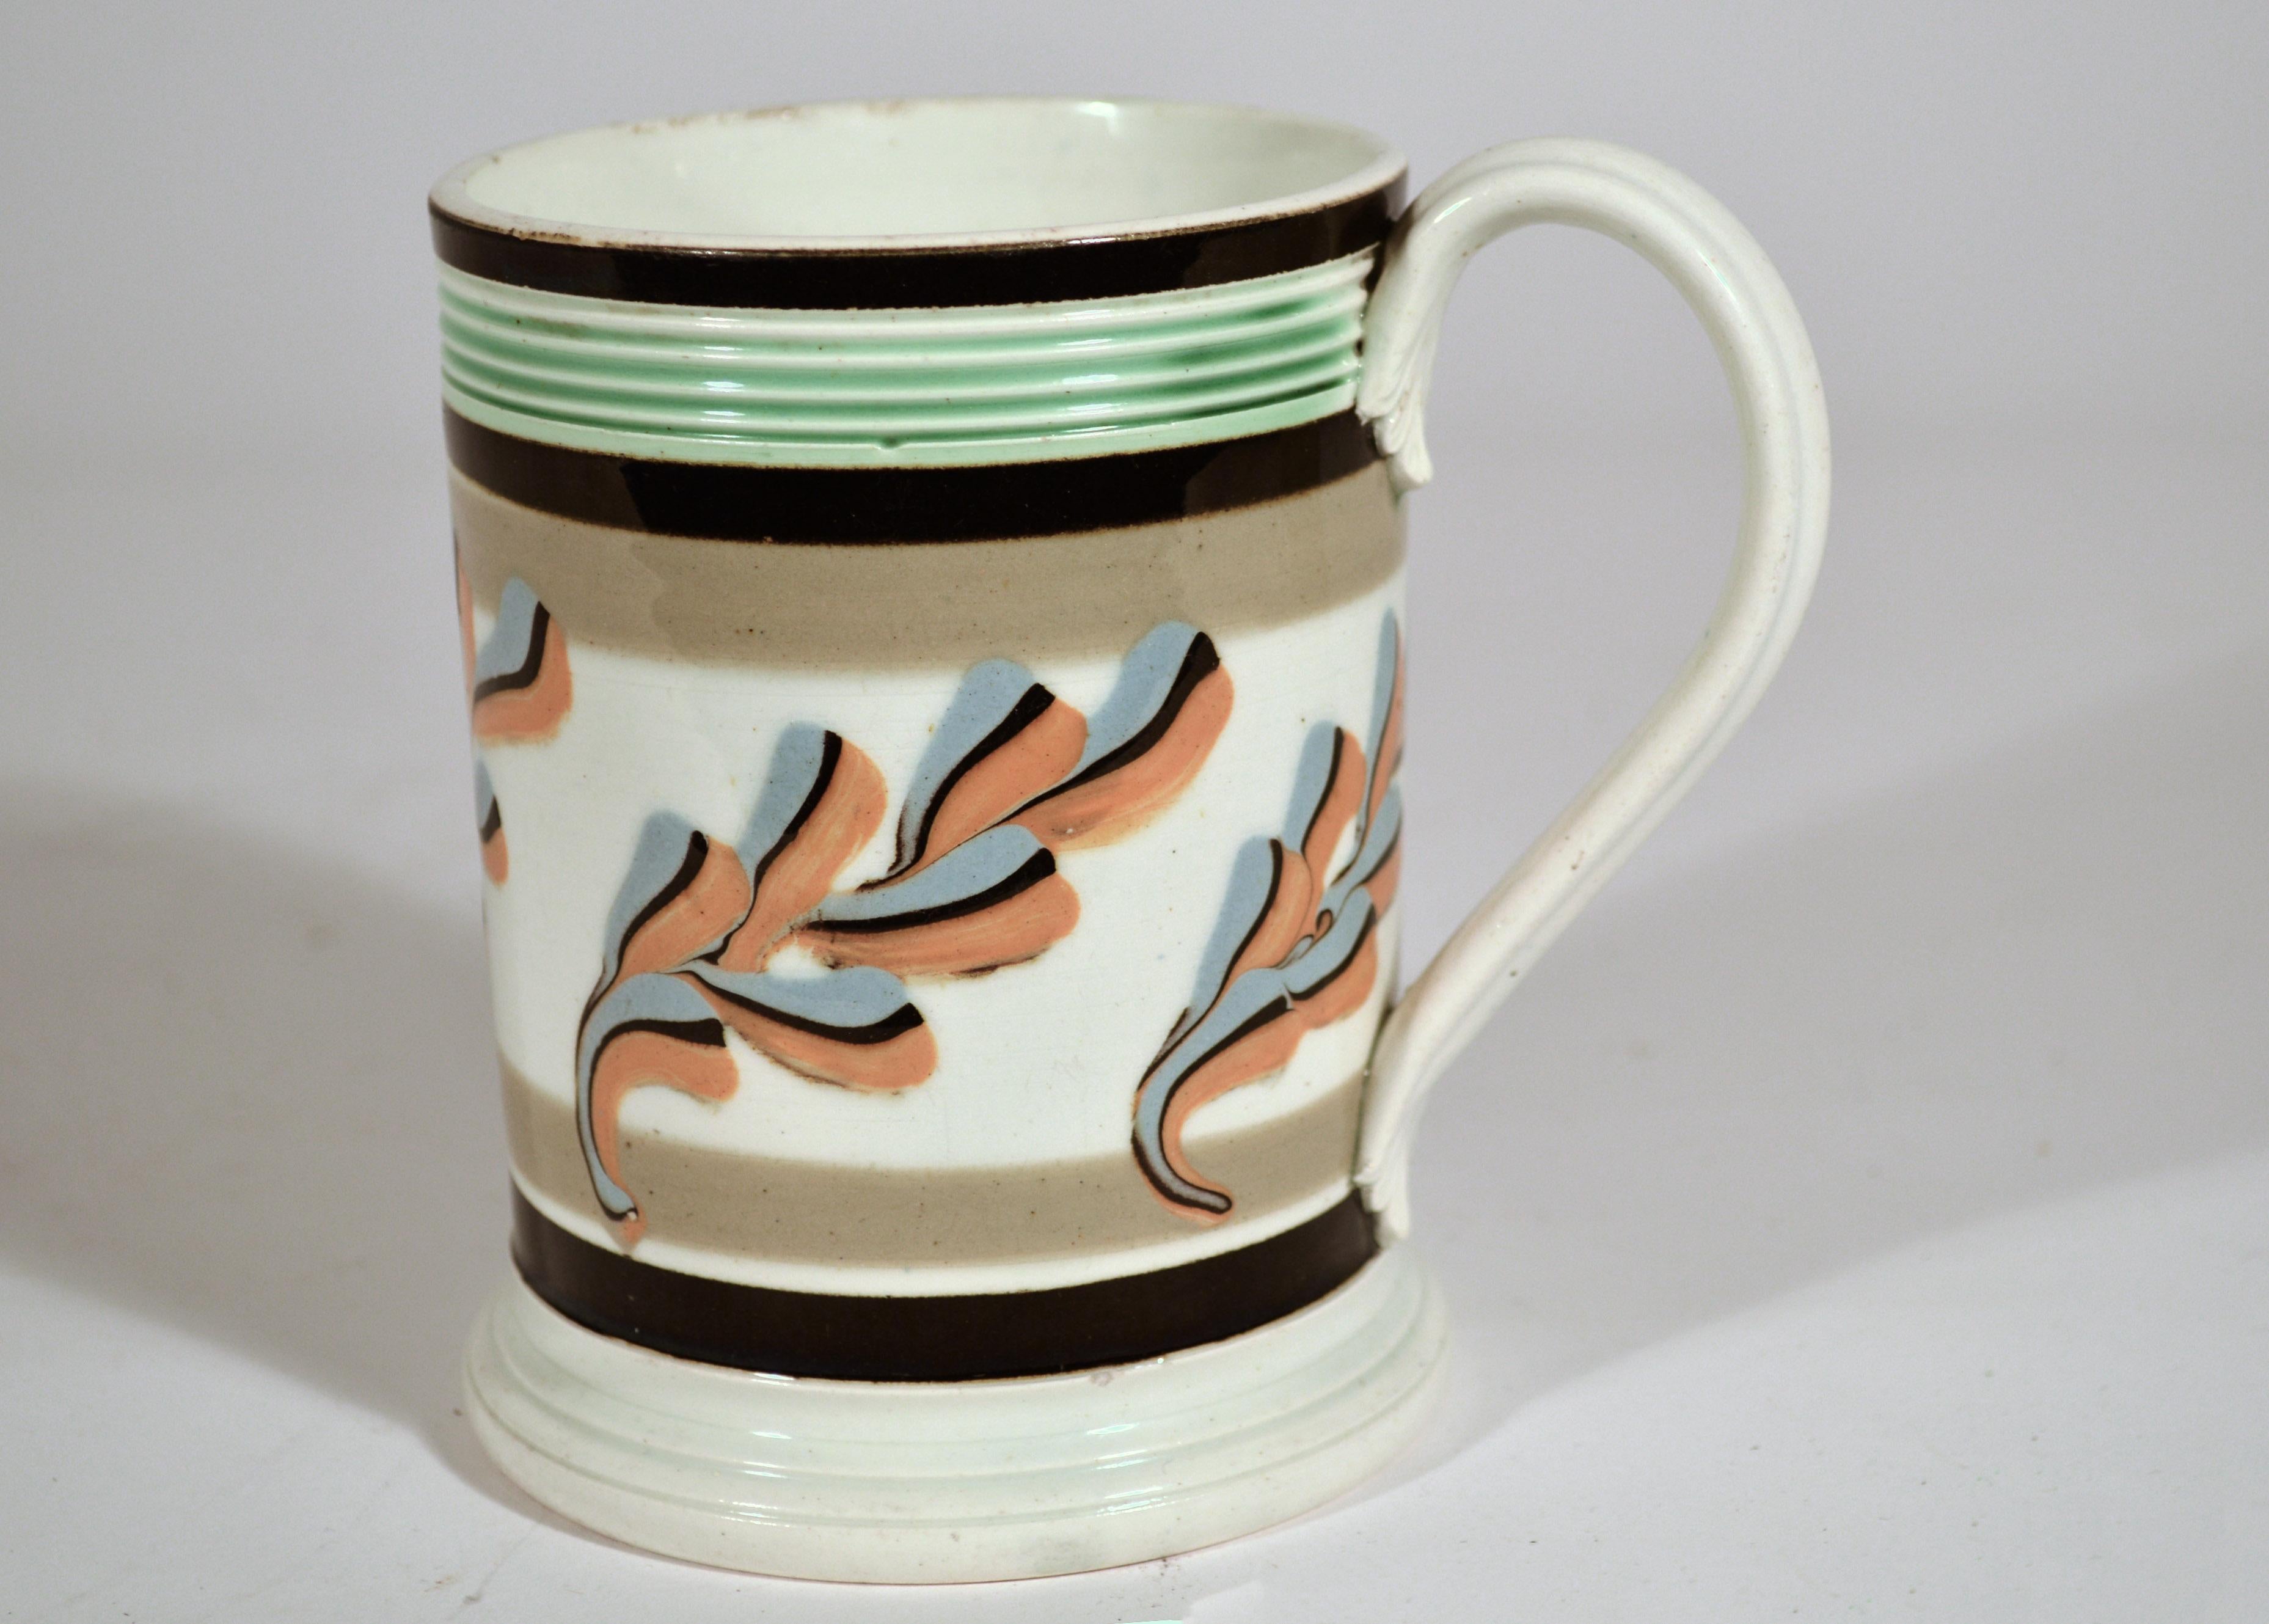 19th Century Mocha Pottery Mug with Oak Leaf Decoration, Circa 1800